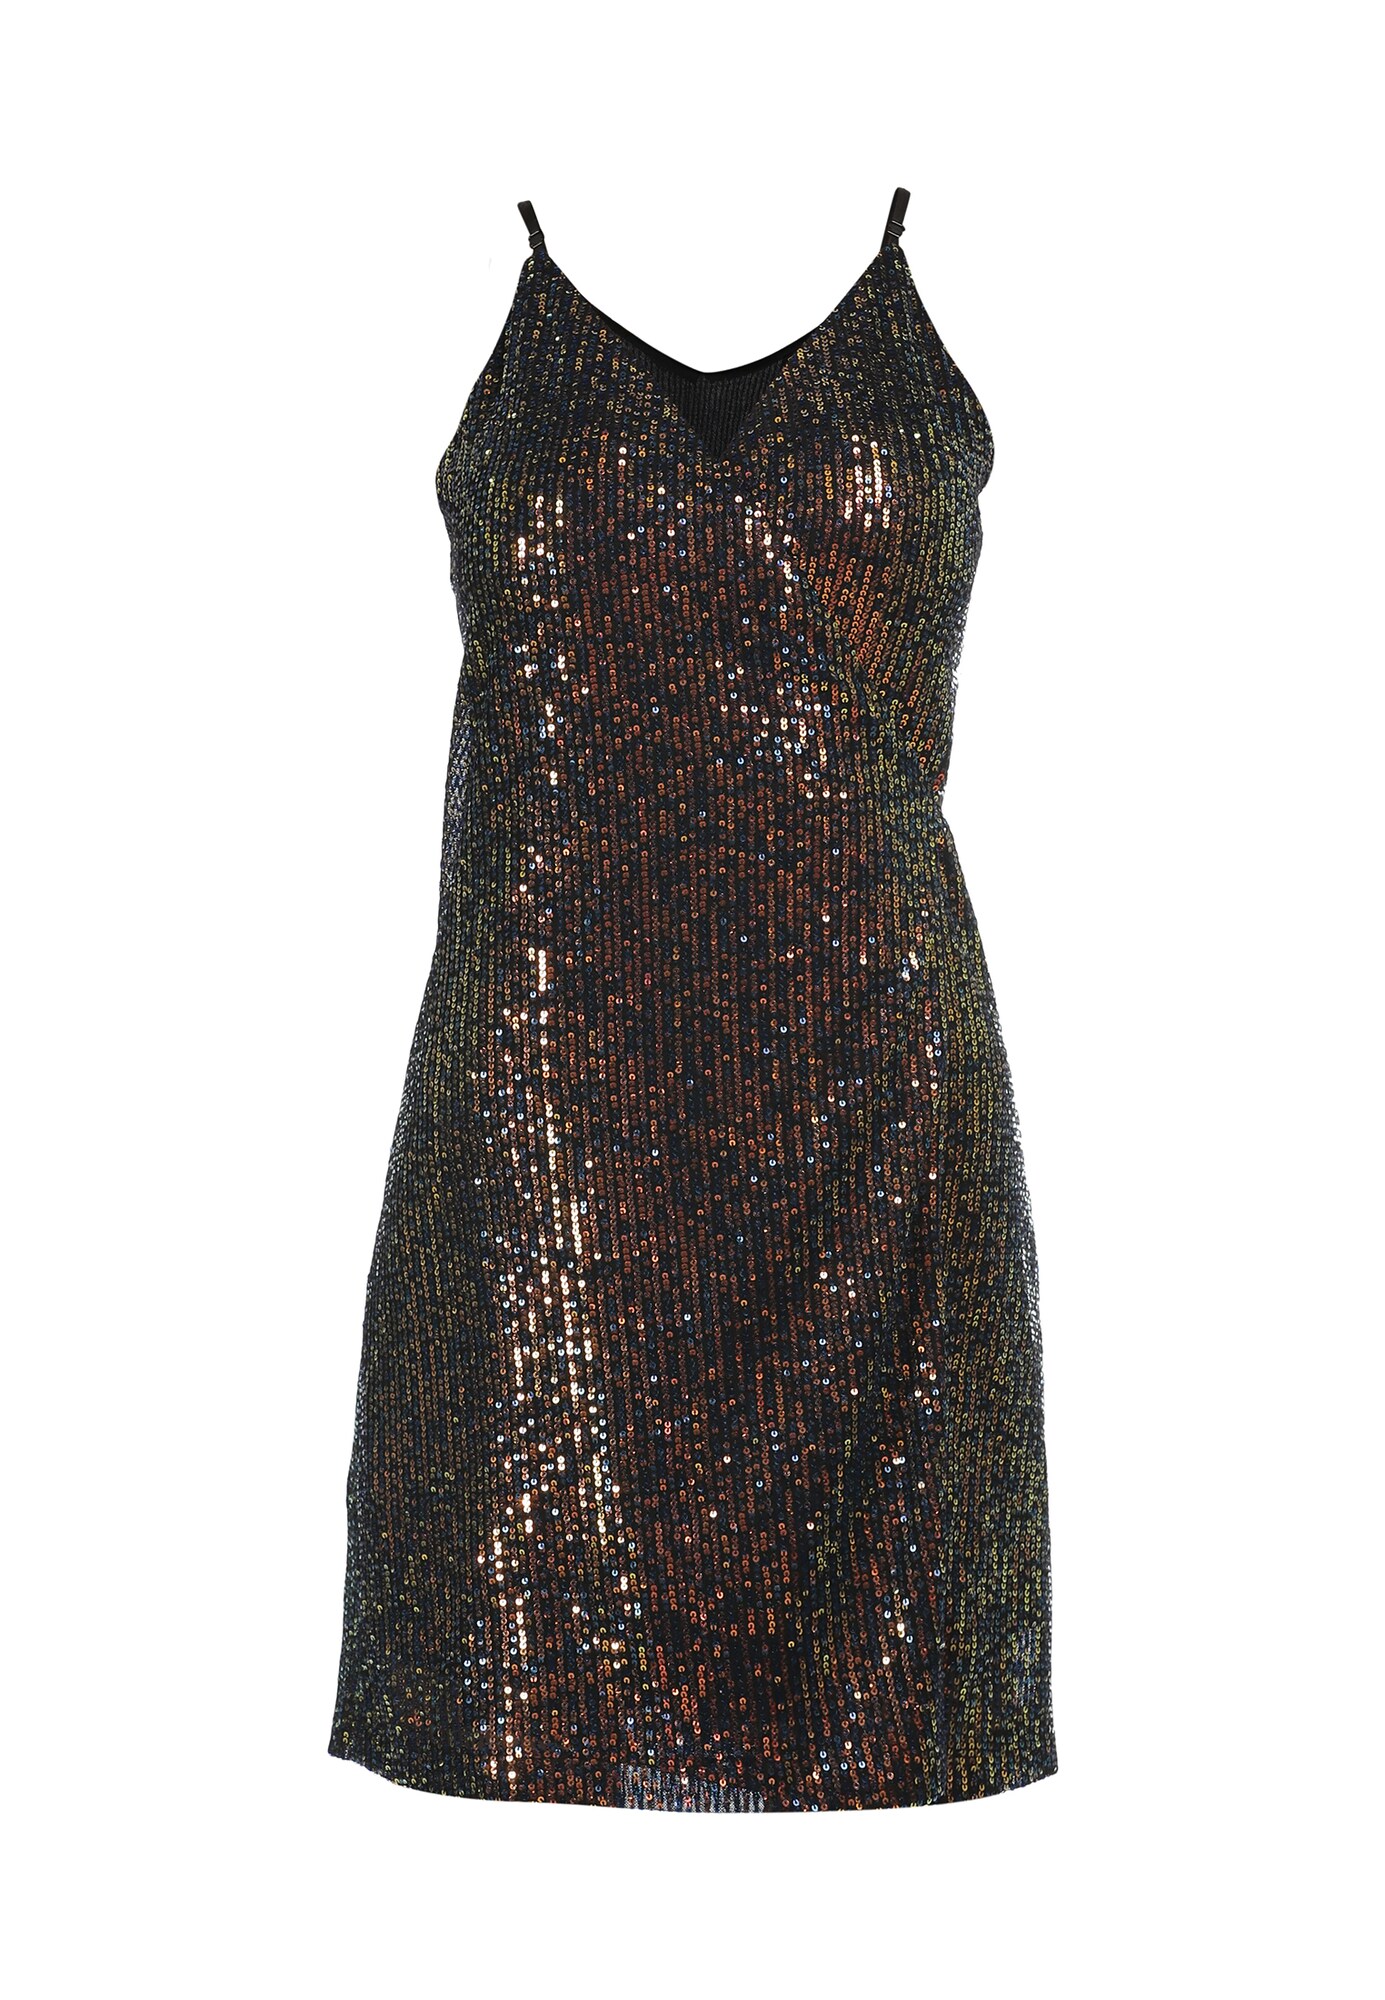 faina Kokteilinė suknelė  mišrios spalvos / bazalto pilka